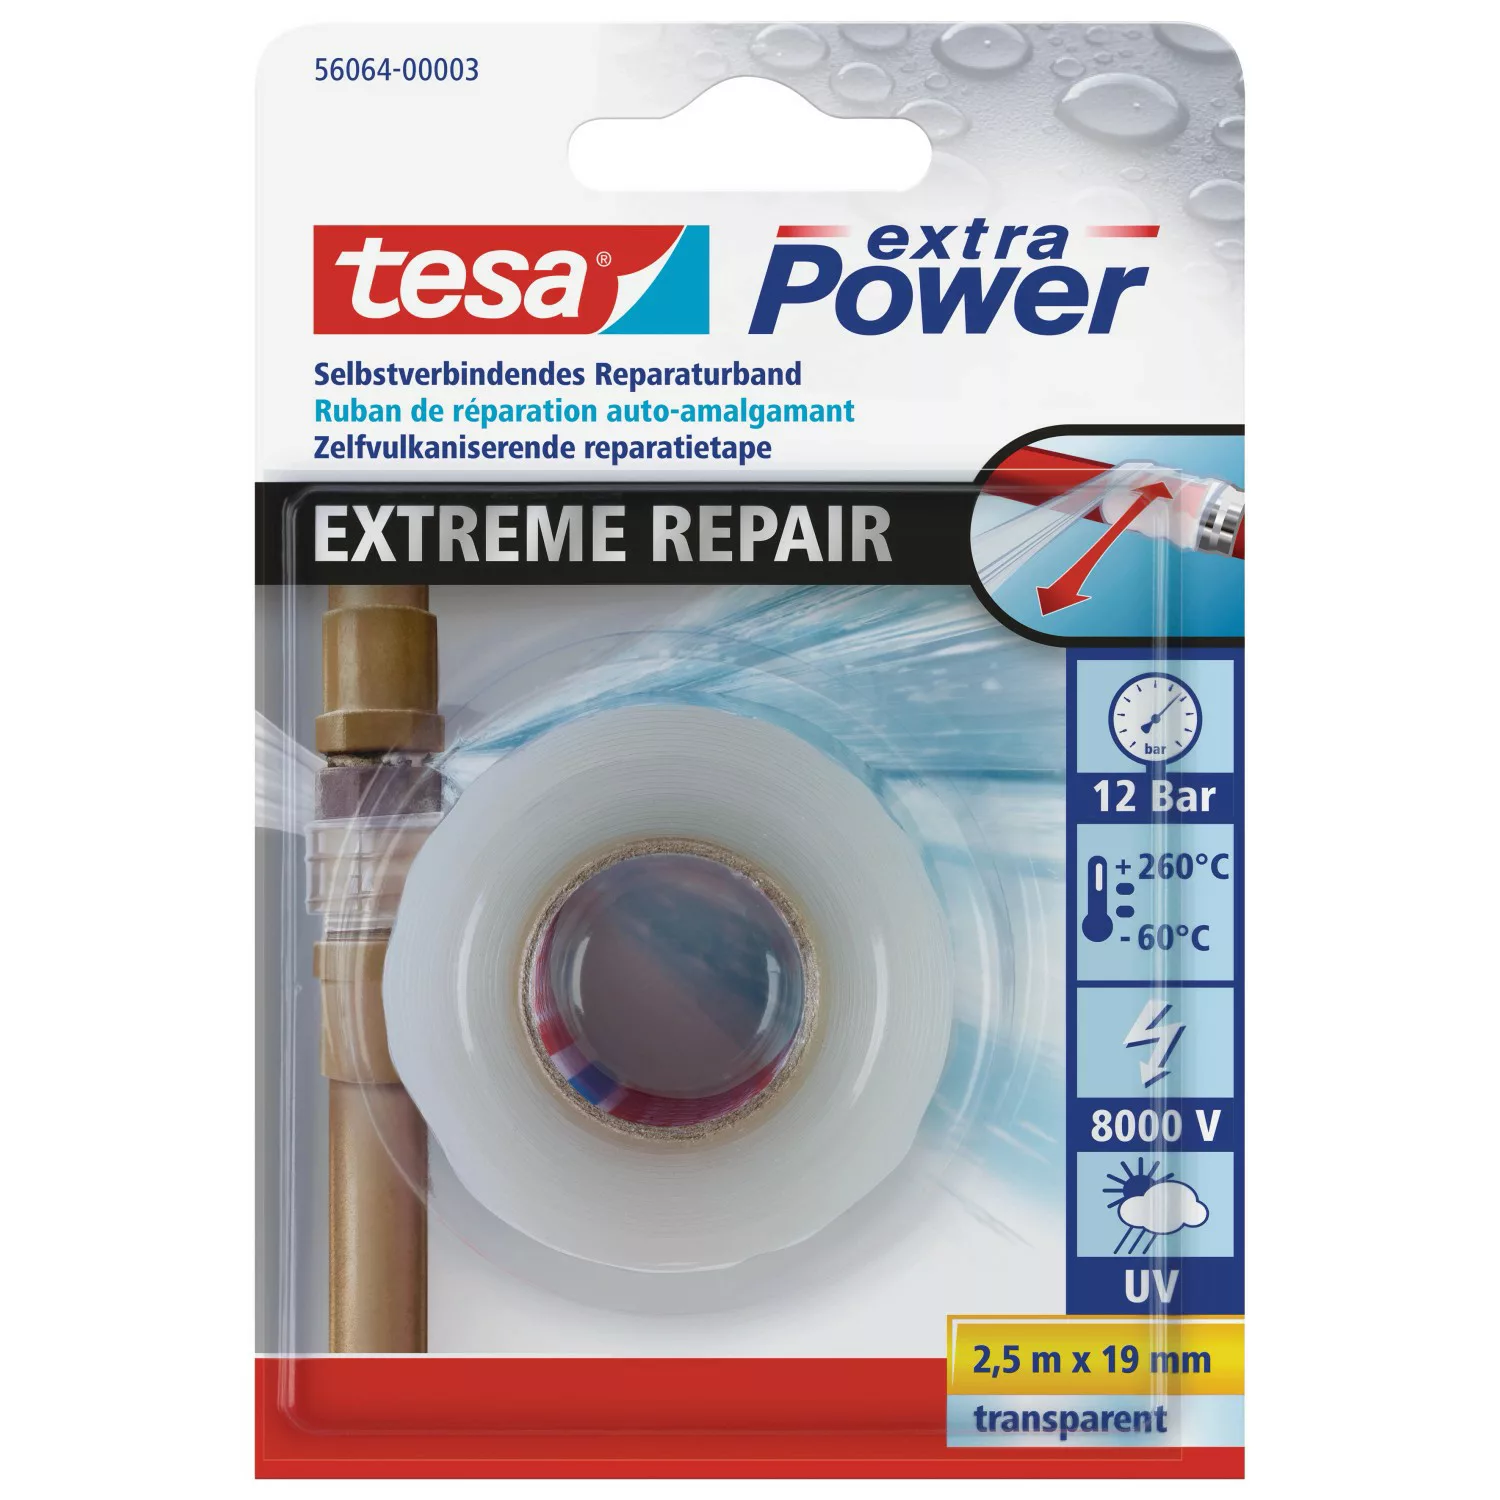 Tesa extra Power Reparaturband Extreme Repair Transparent 2,5 m x 19 mm günstig online kaufen